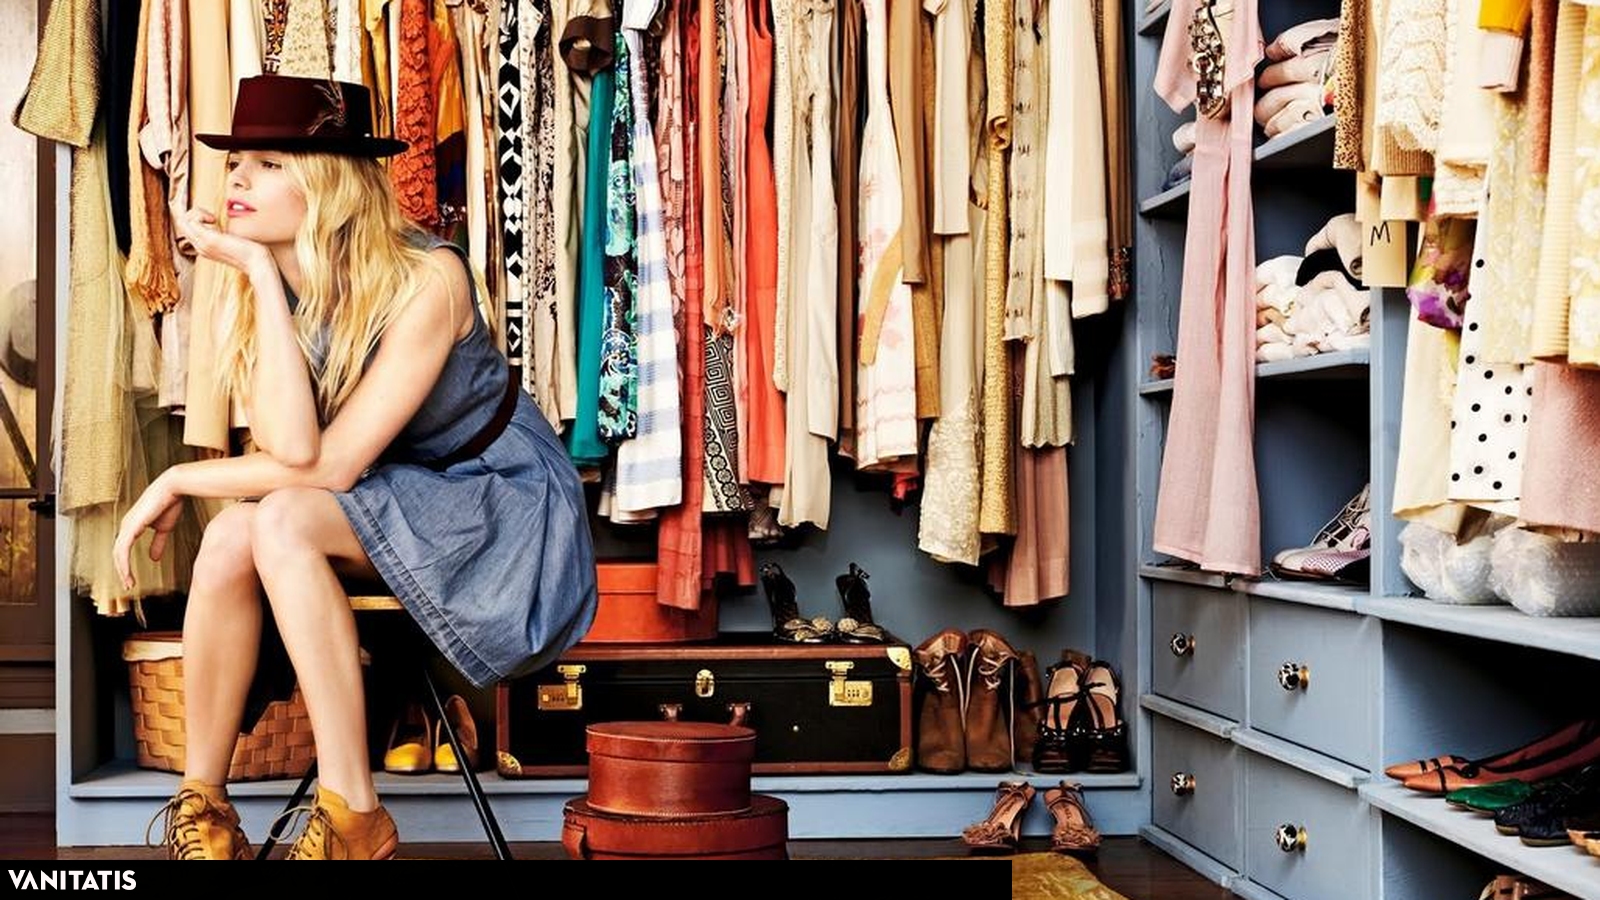 Cambio de armario: cómo guardar tu ropa de temporada sin